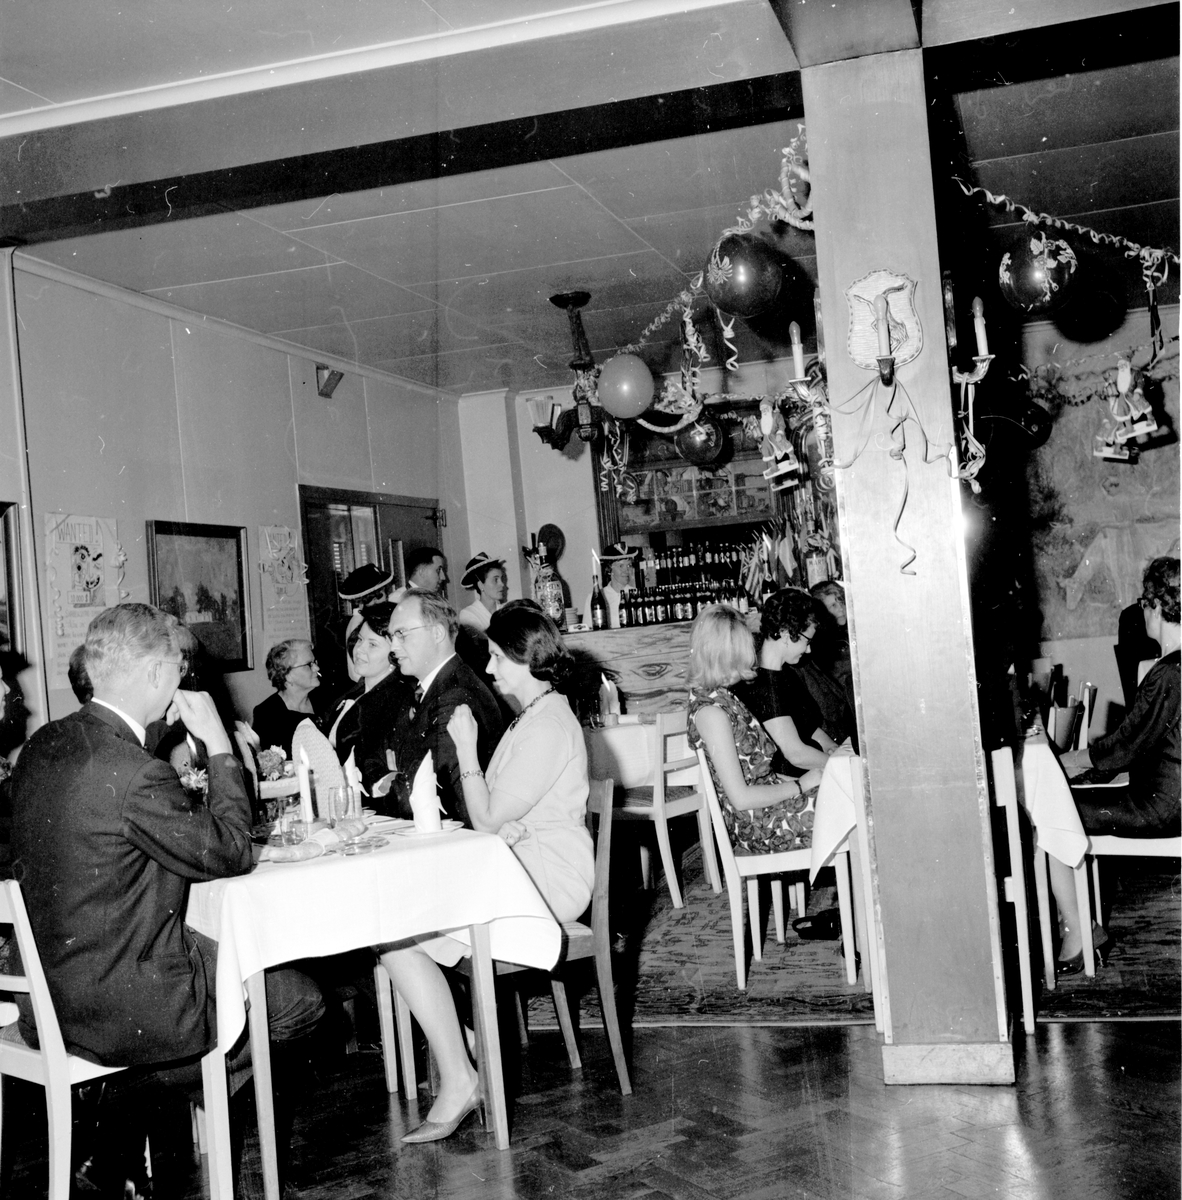 Bollnäs,
Lionsclub på luciafest,
Rehngården,
7 December 1964